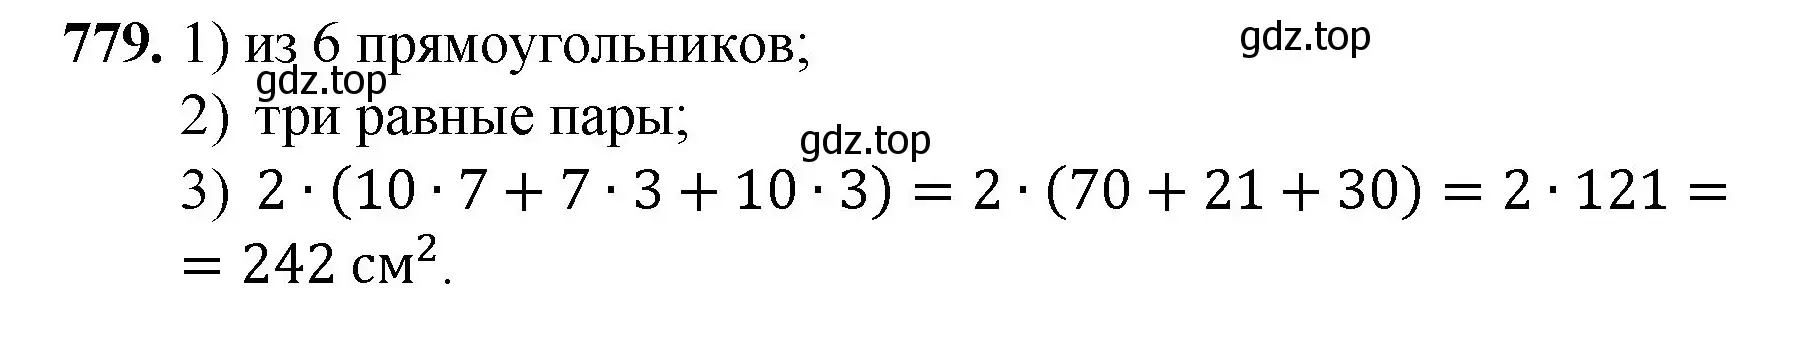 Решение номер 779 (страница 175) гдз по математике 5 класс Мерзляк, Полонский, учебник